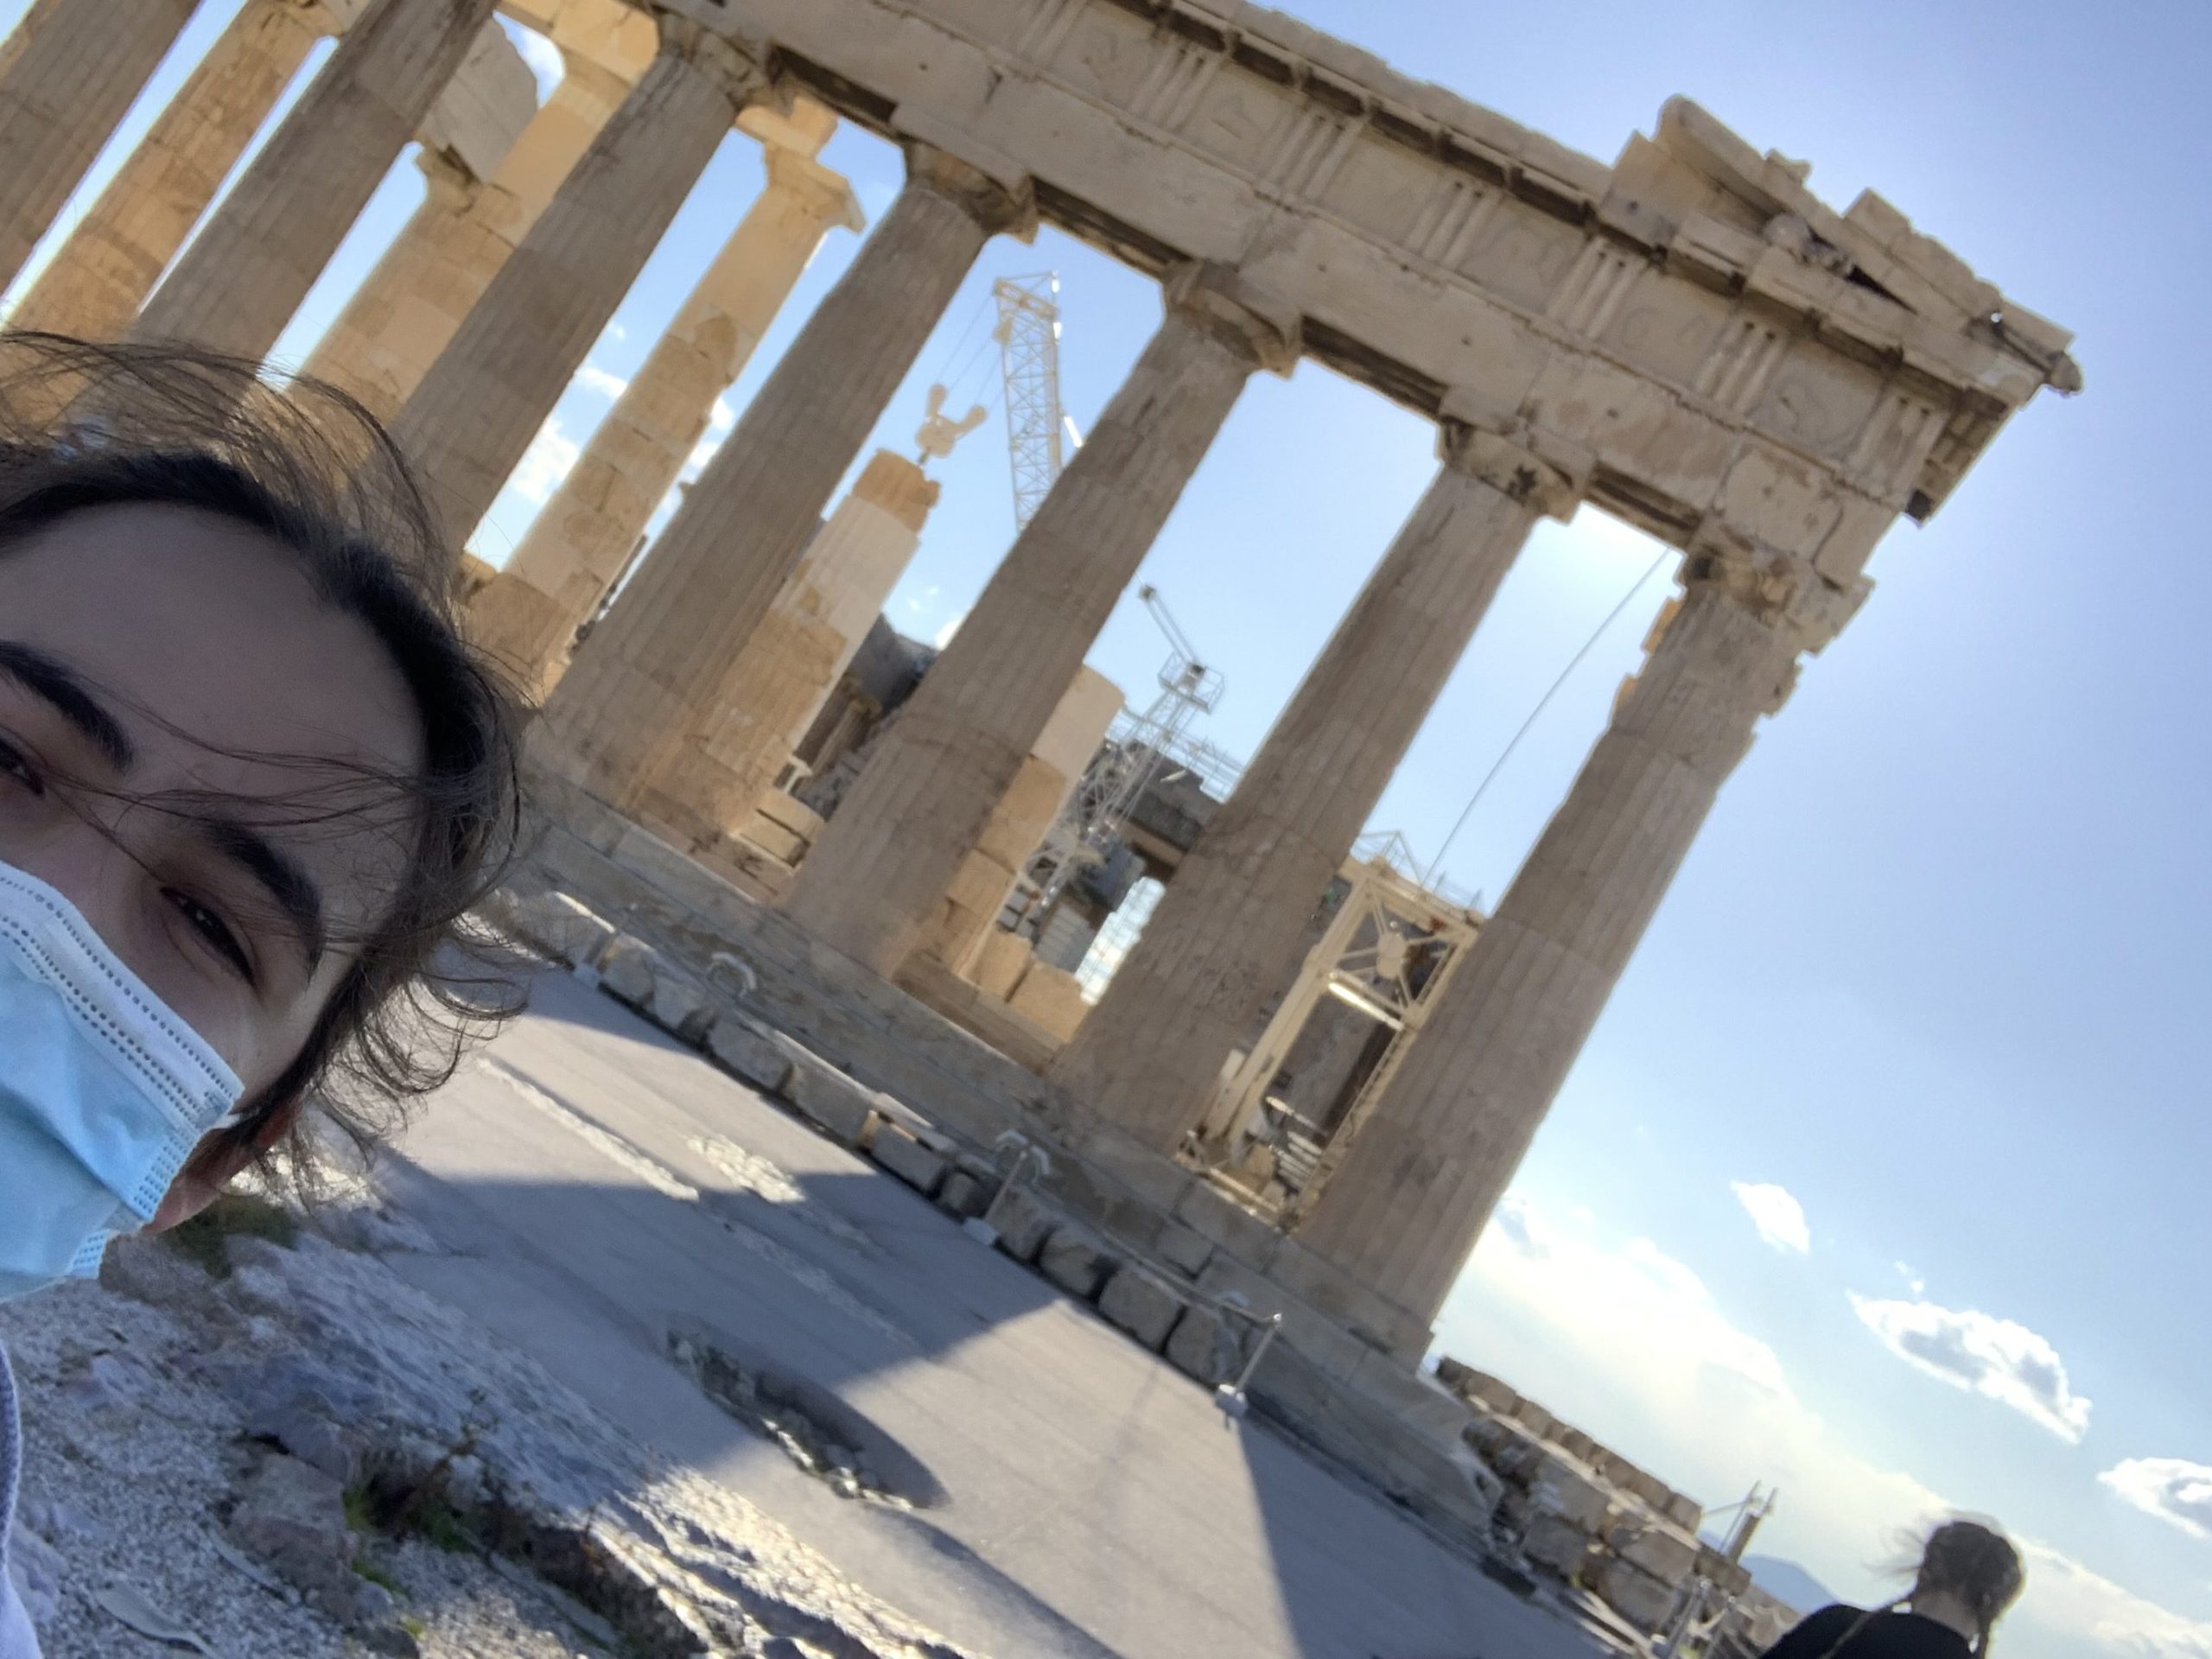 The Parthenon on the Acropolis